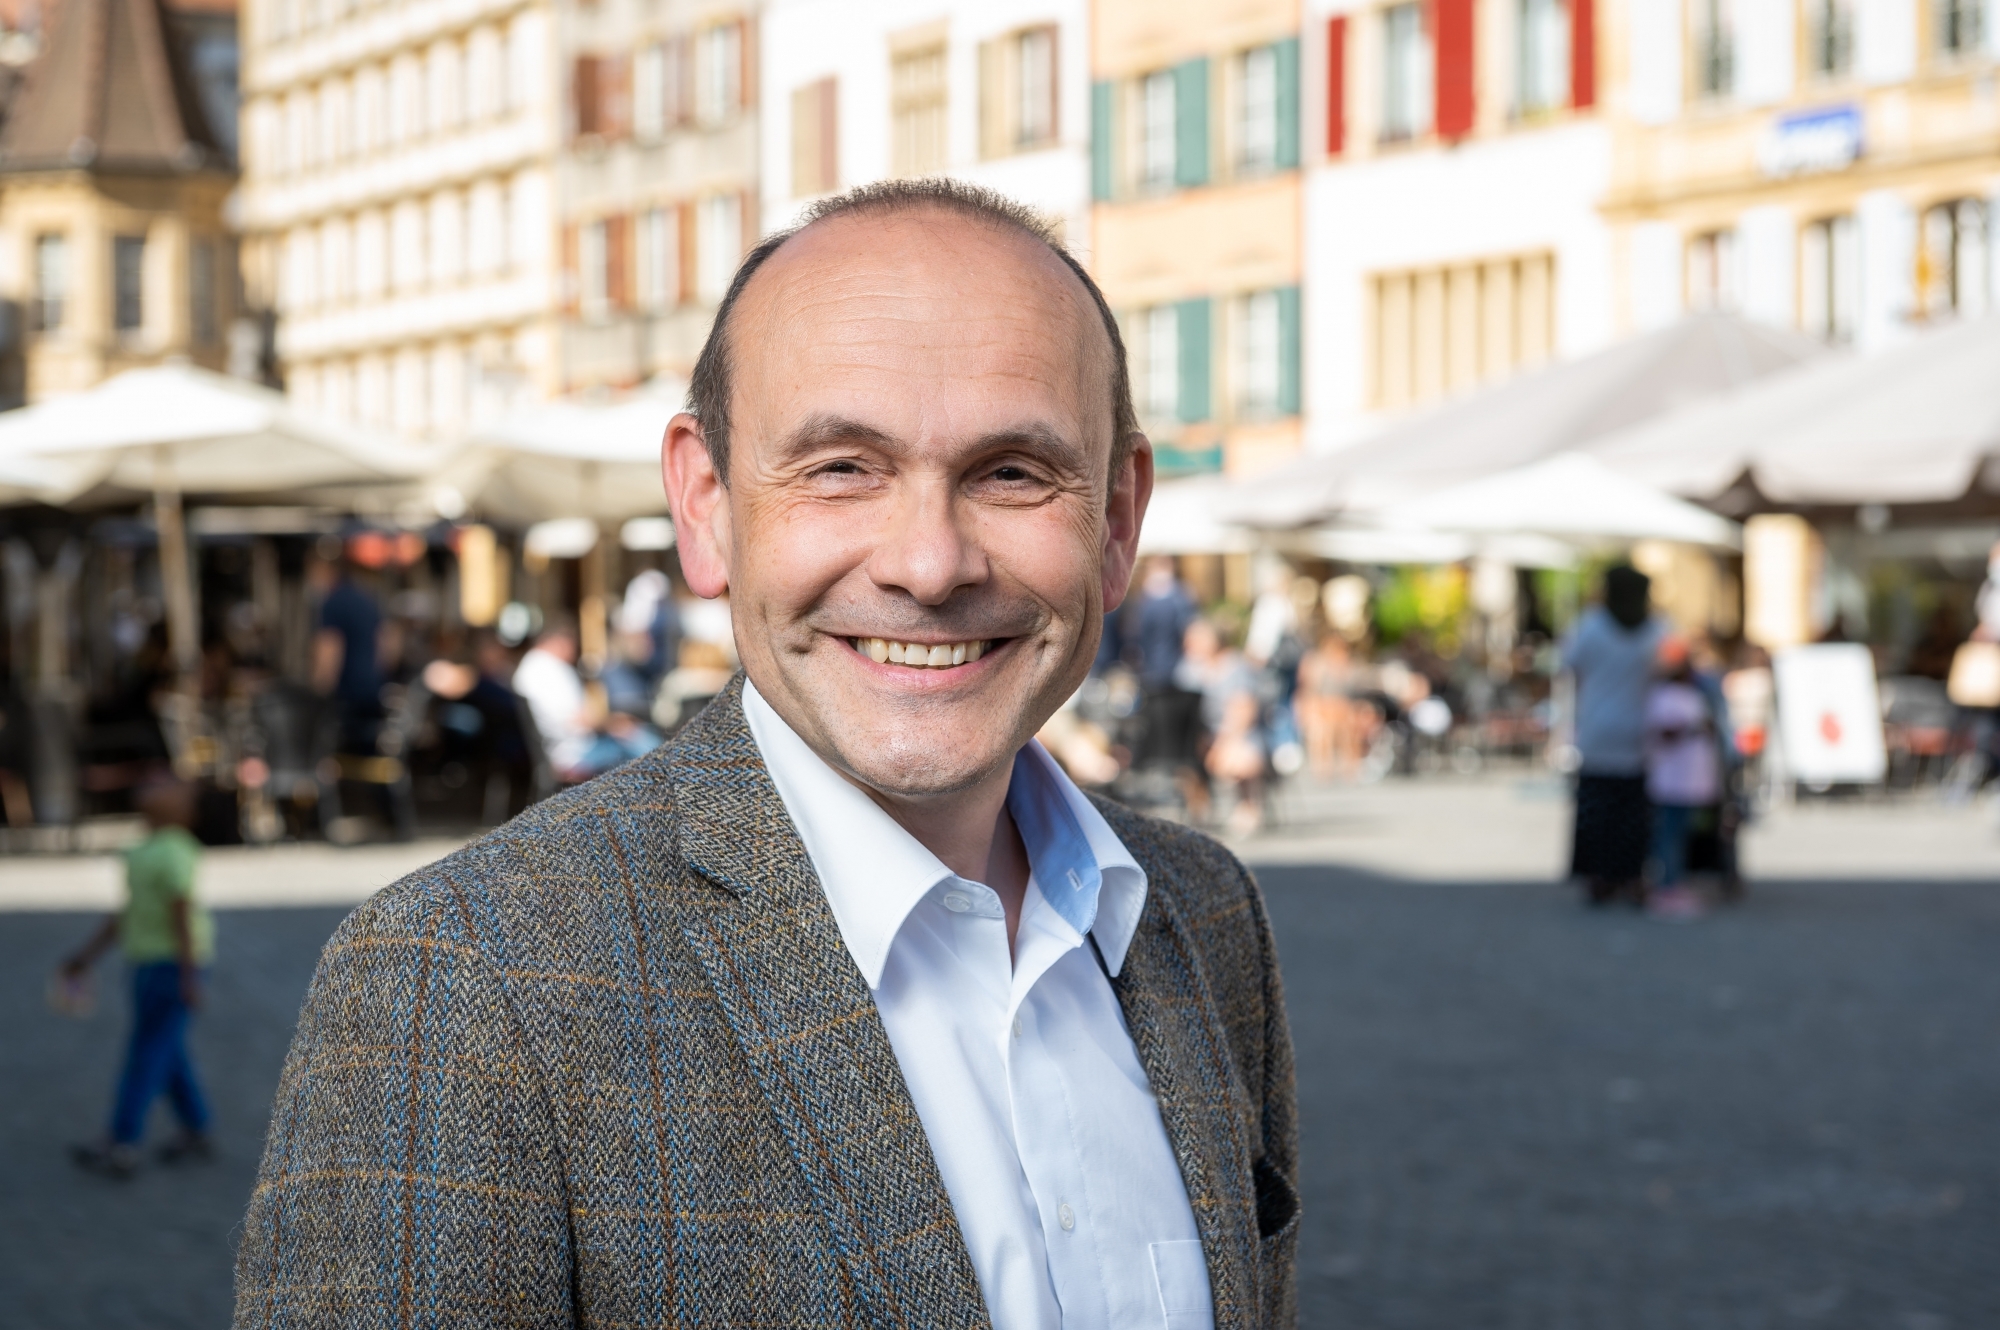 "J’ai l’impression d’avoir trois jobs" confie Mauro Moruzzi, conseiller communal de Neuchâtel.